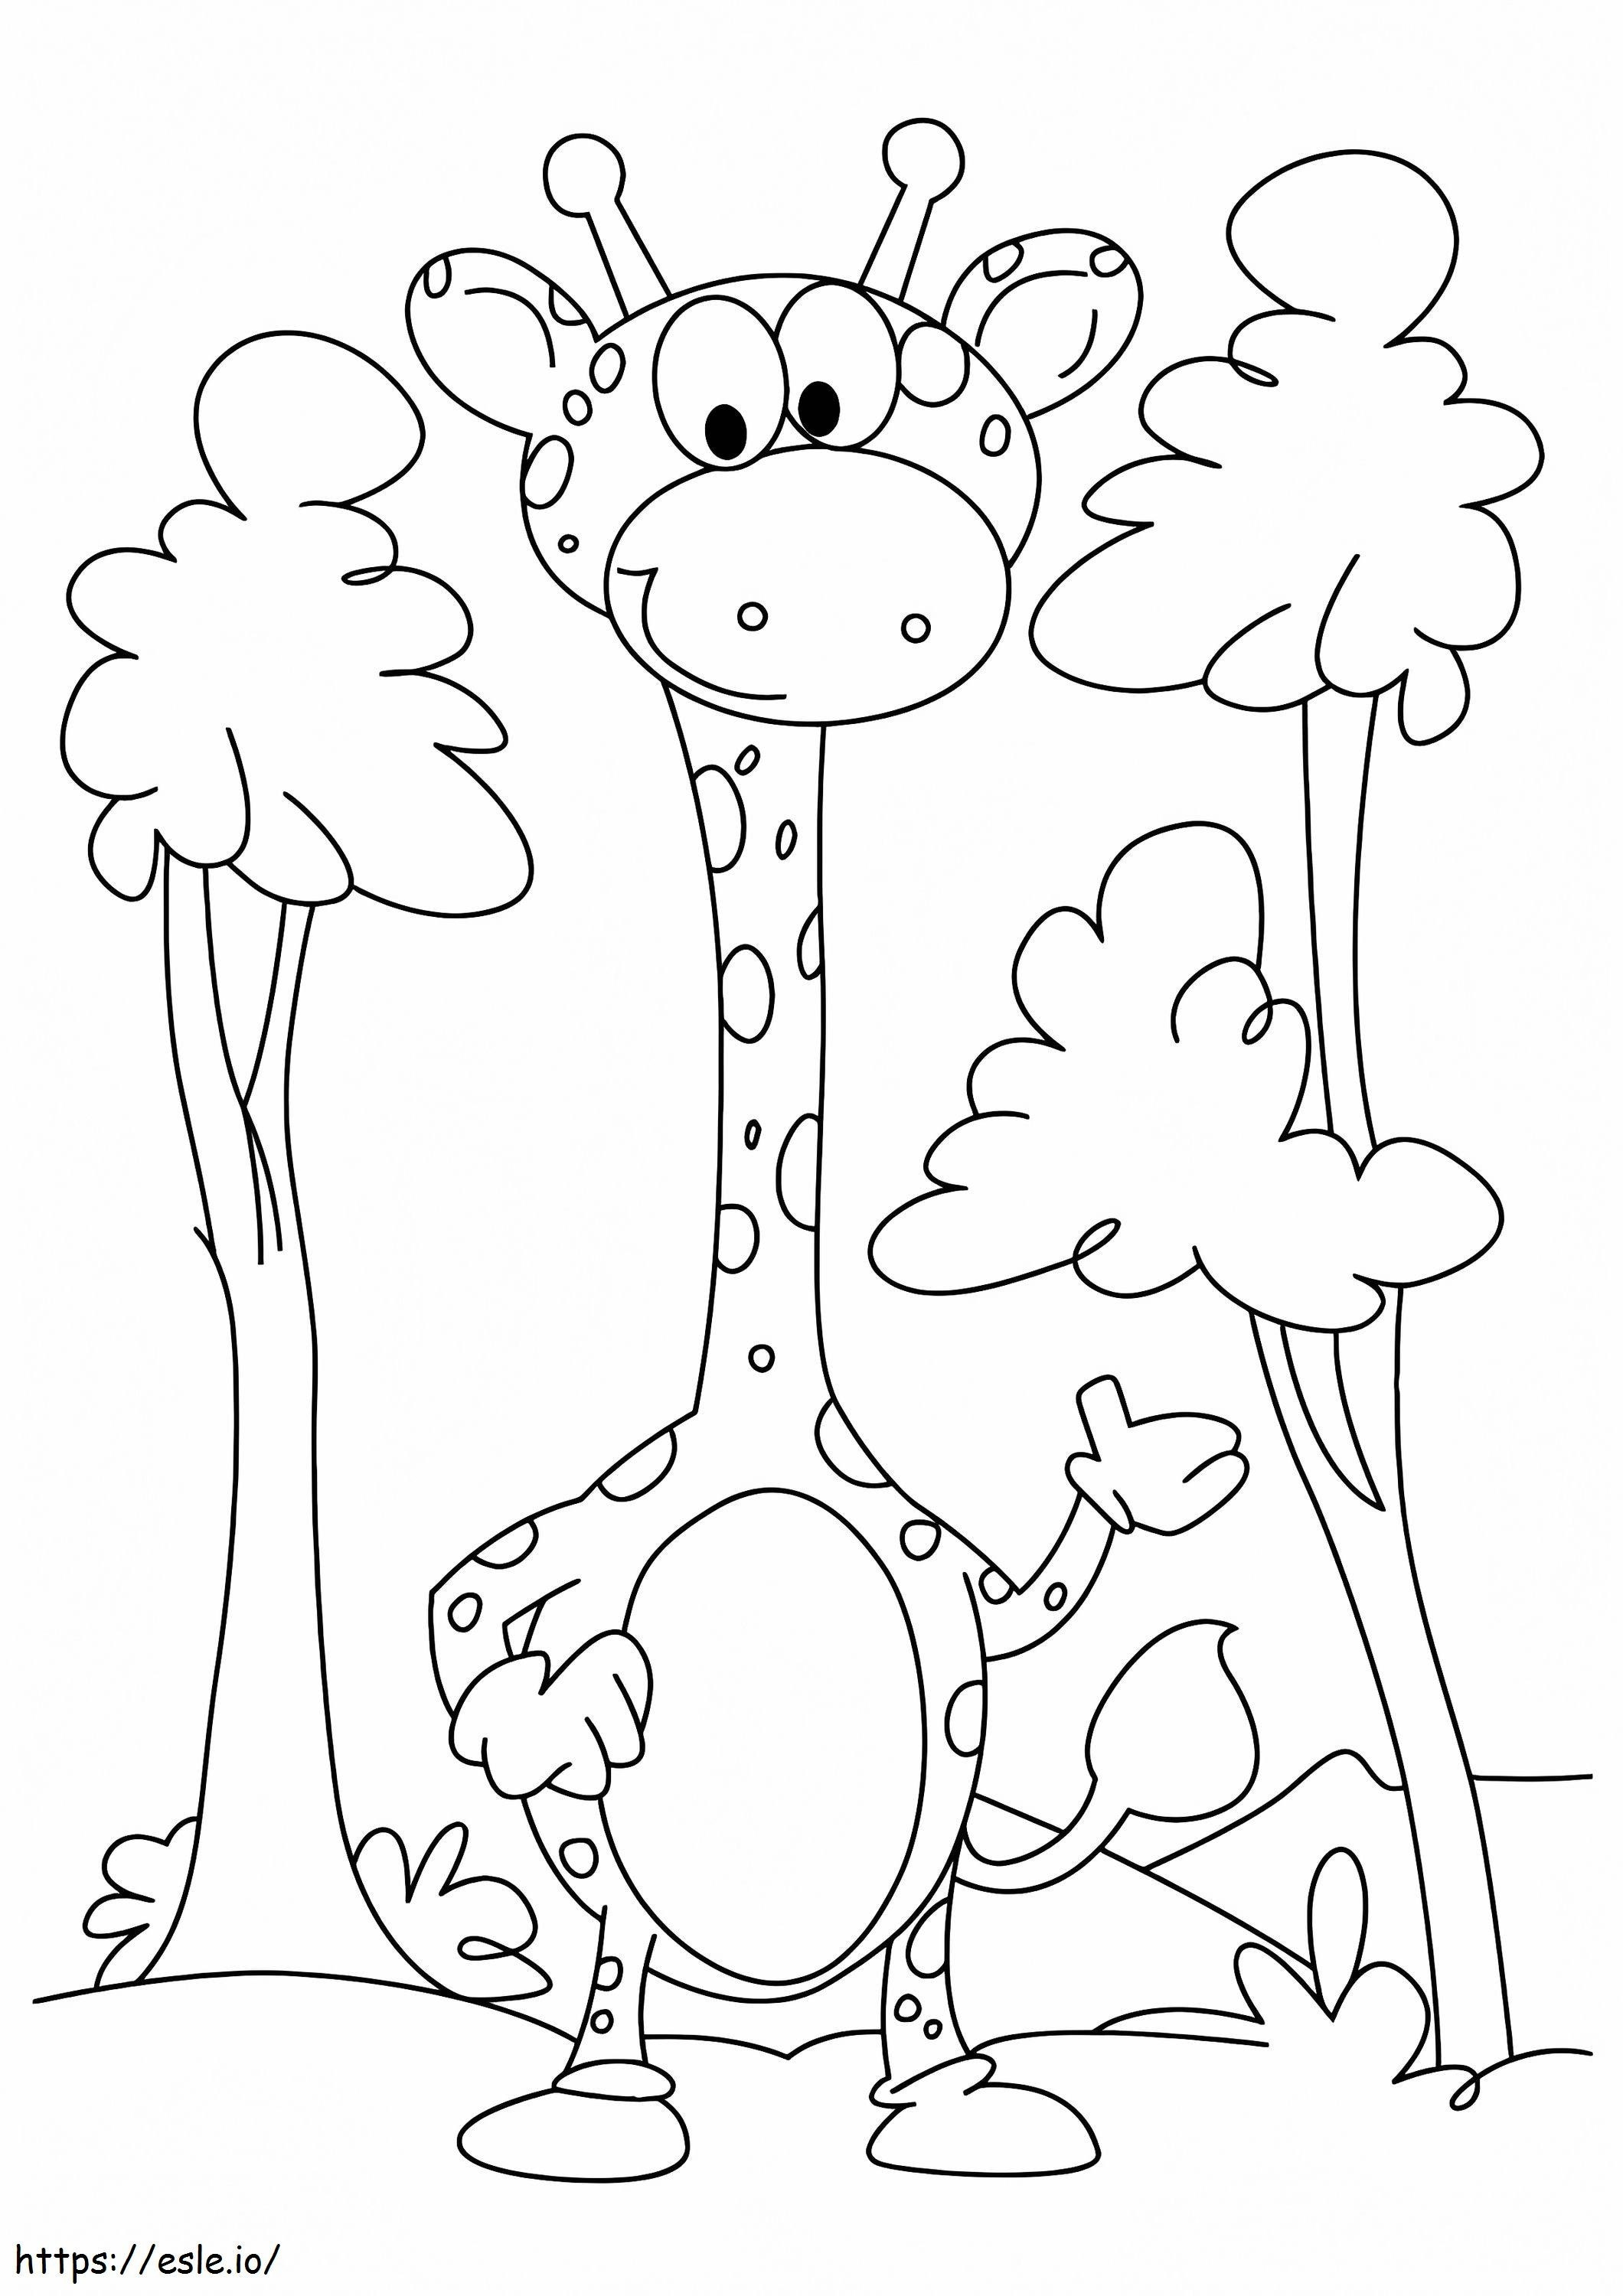 1526284438 Die Baby-Giraffe unter Bäumen A4 ausmalbilder